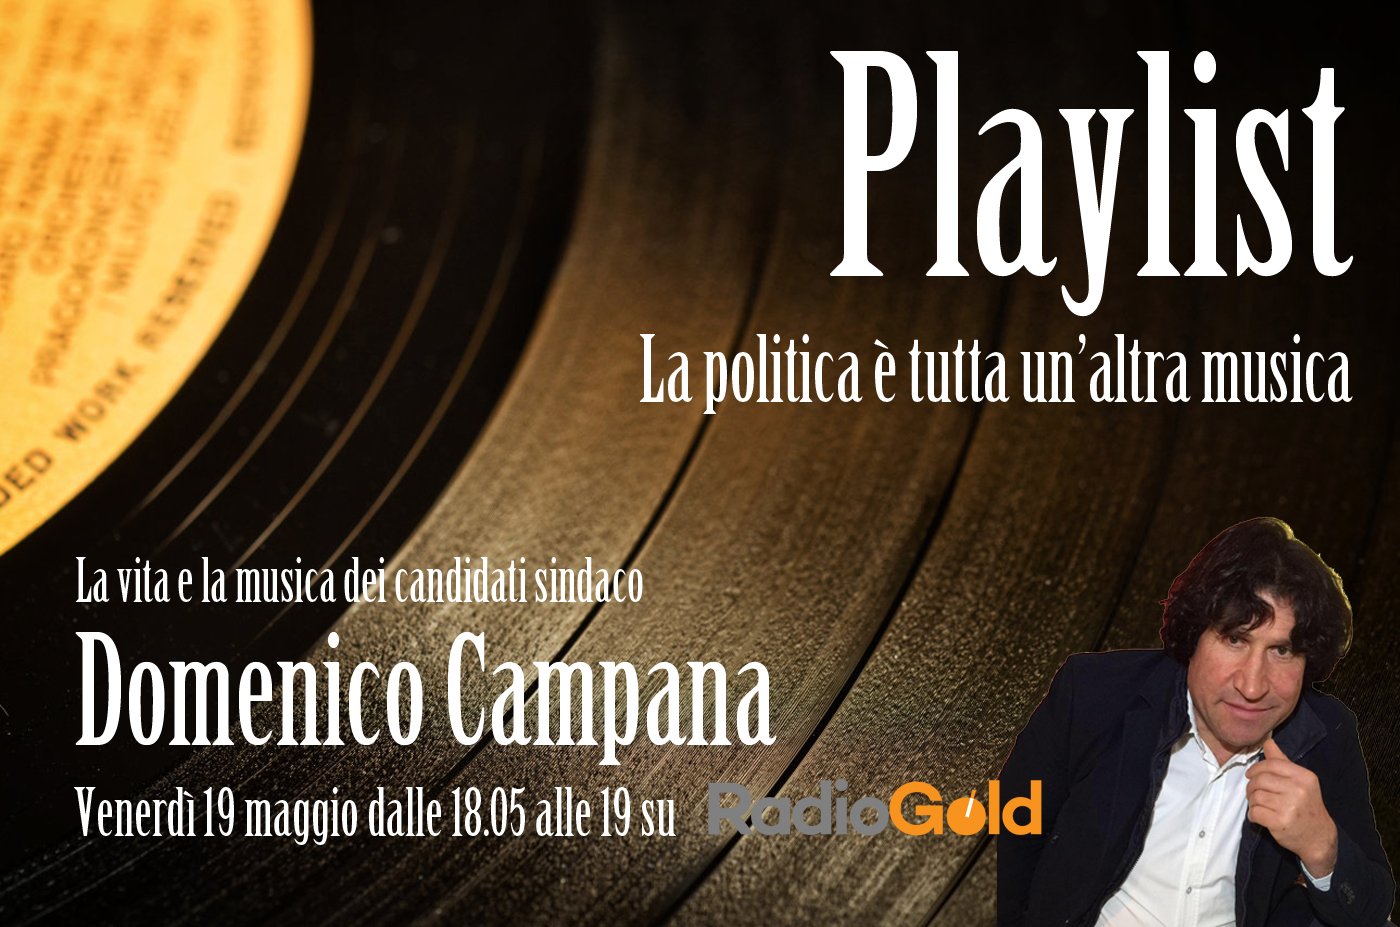 La Playlist di Domenico Campana